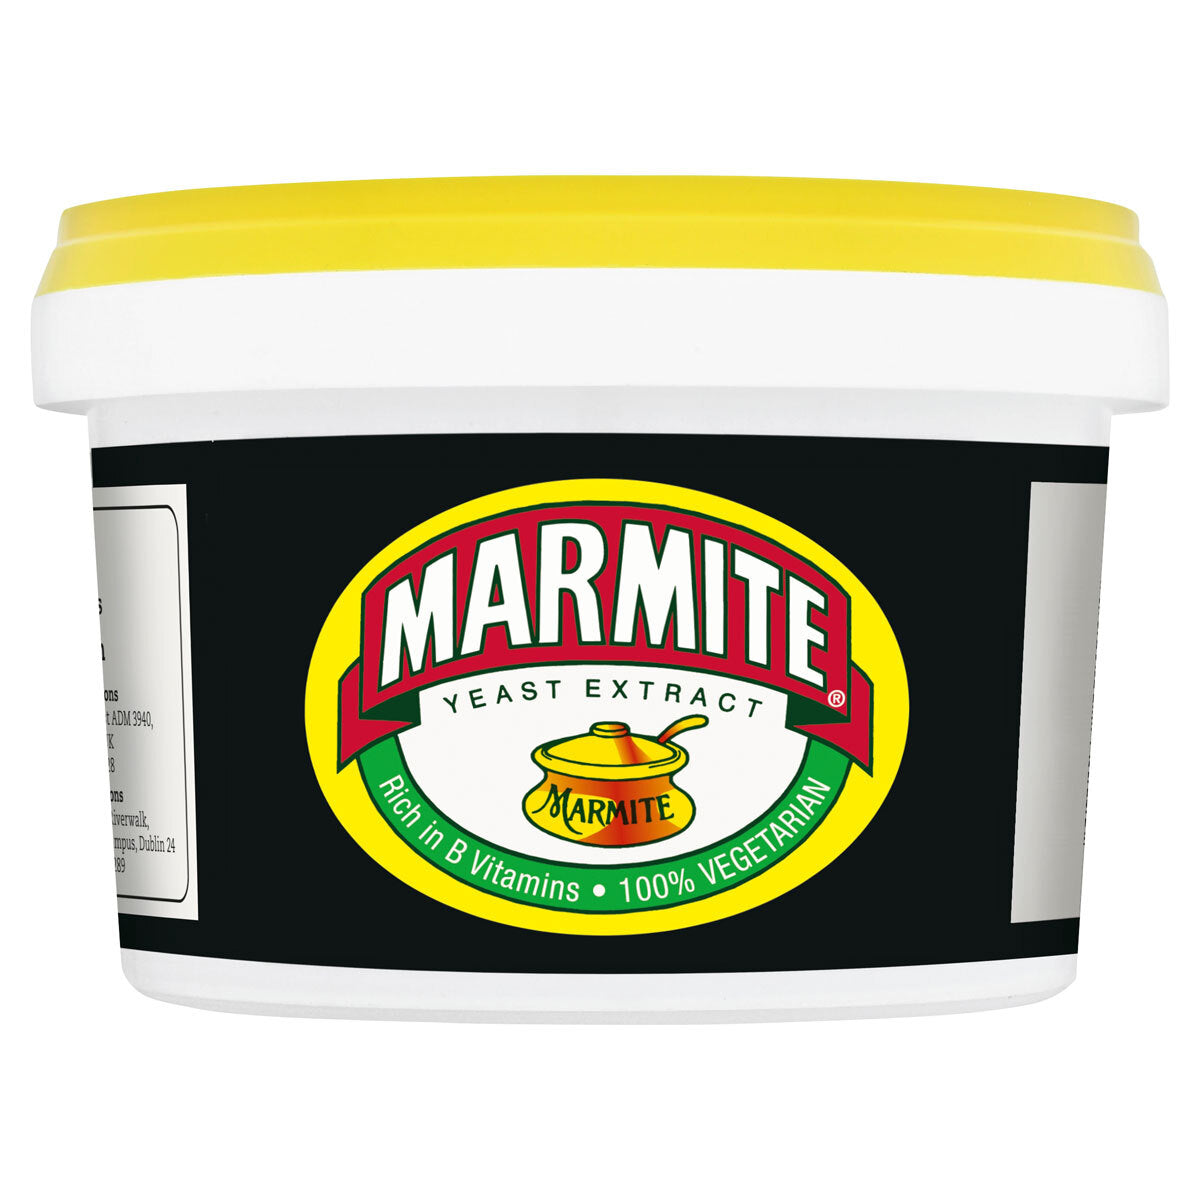 Marmite, 600g Spread Costco UK   